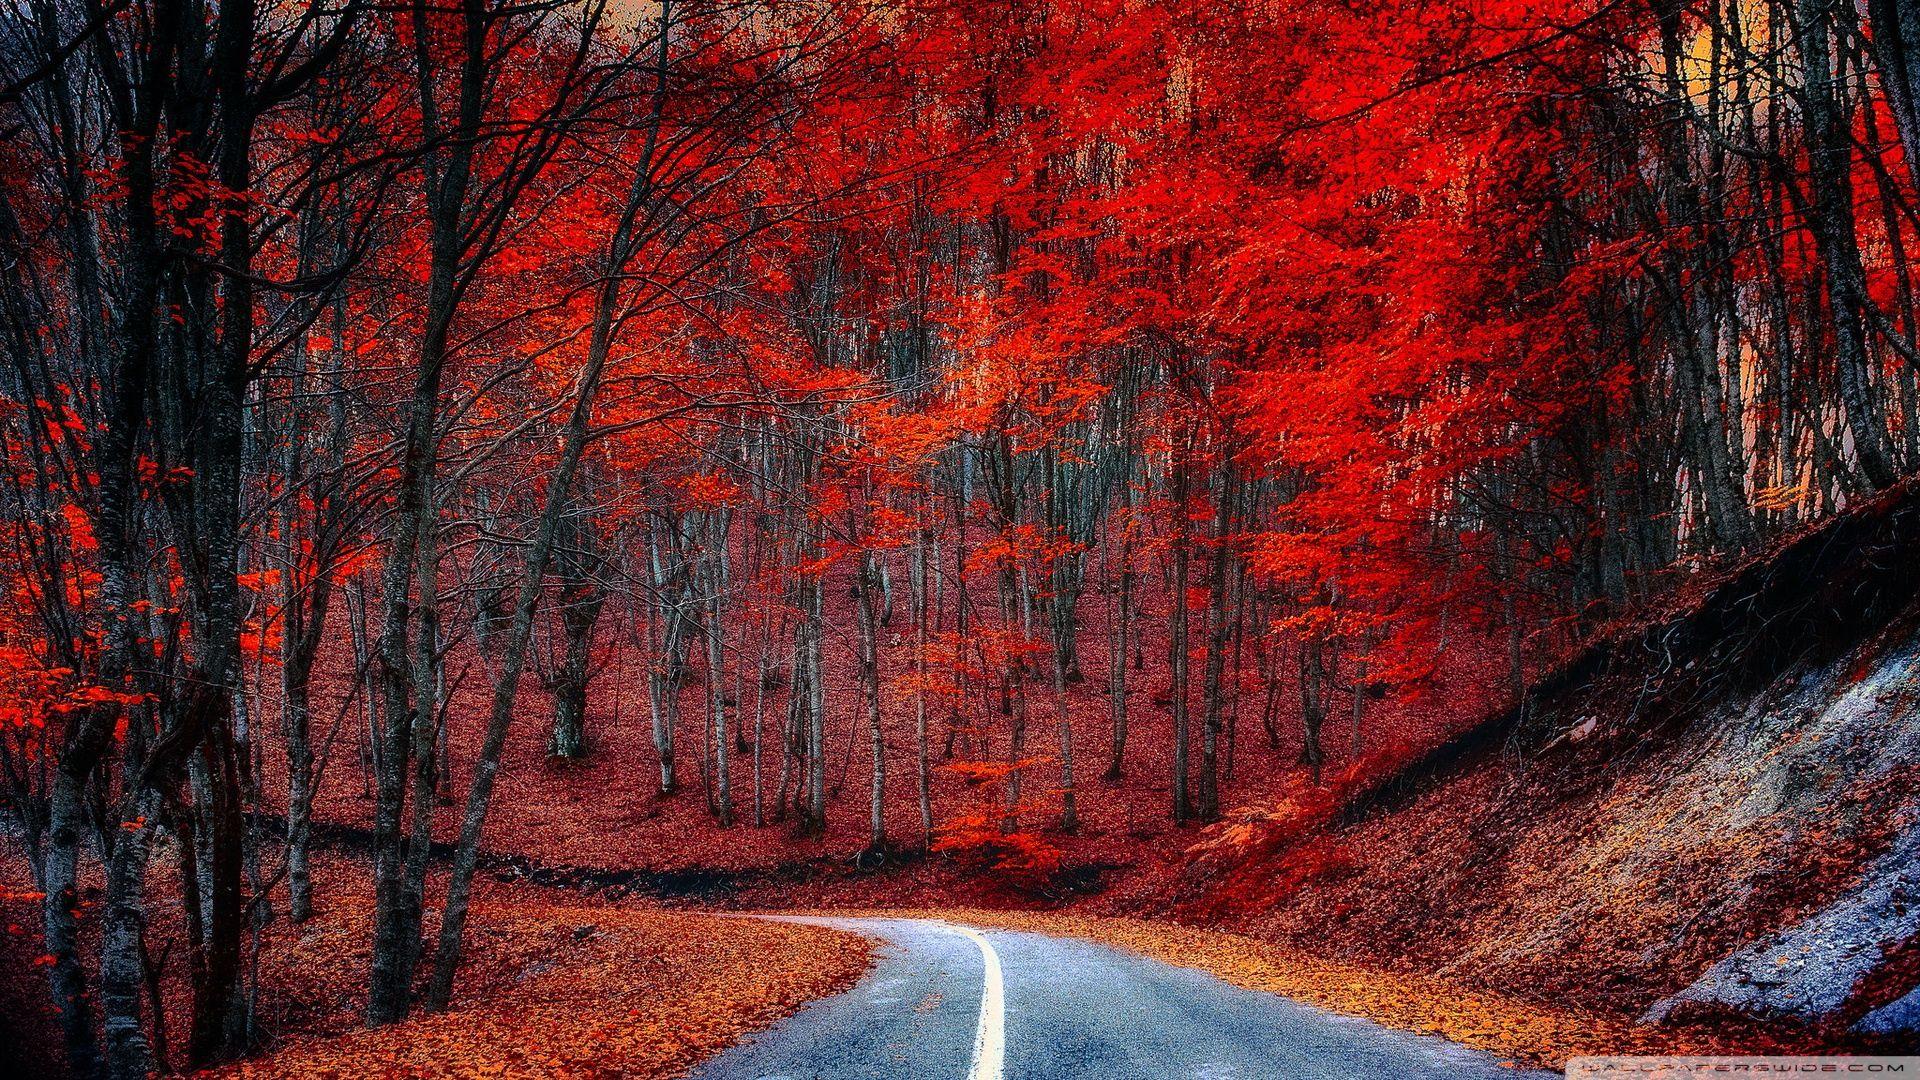 Hình Ảnh Đẹp Nhất Cây Đỏ: Hãy tận hưởng những hình ảnh tuyệt đẹp về cây đỏ tuyệt đẹp nhất. Chiêm ngưỡng những cảnh quan tuyệt đẹp với những mảng màu đỏ rực rỡ, tạo nên một bức tranh tuyệt đẹp của thiên nhiên.